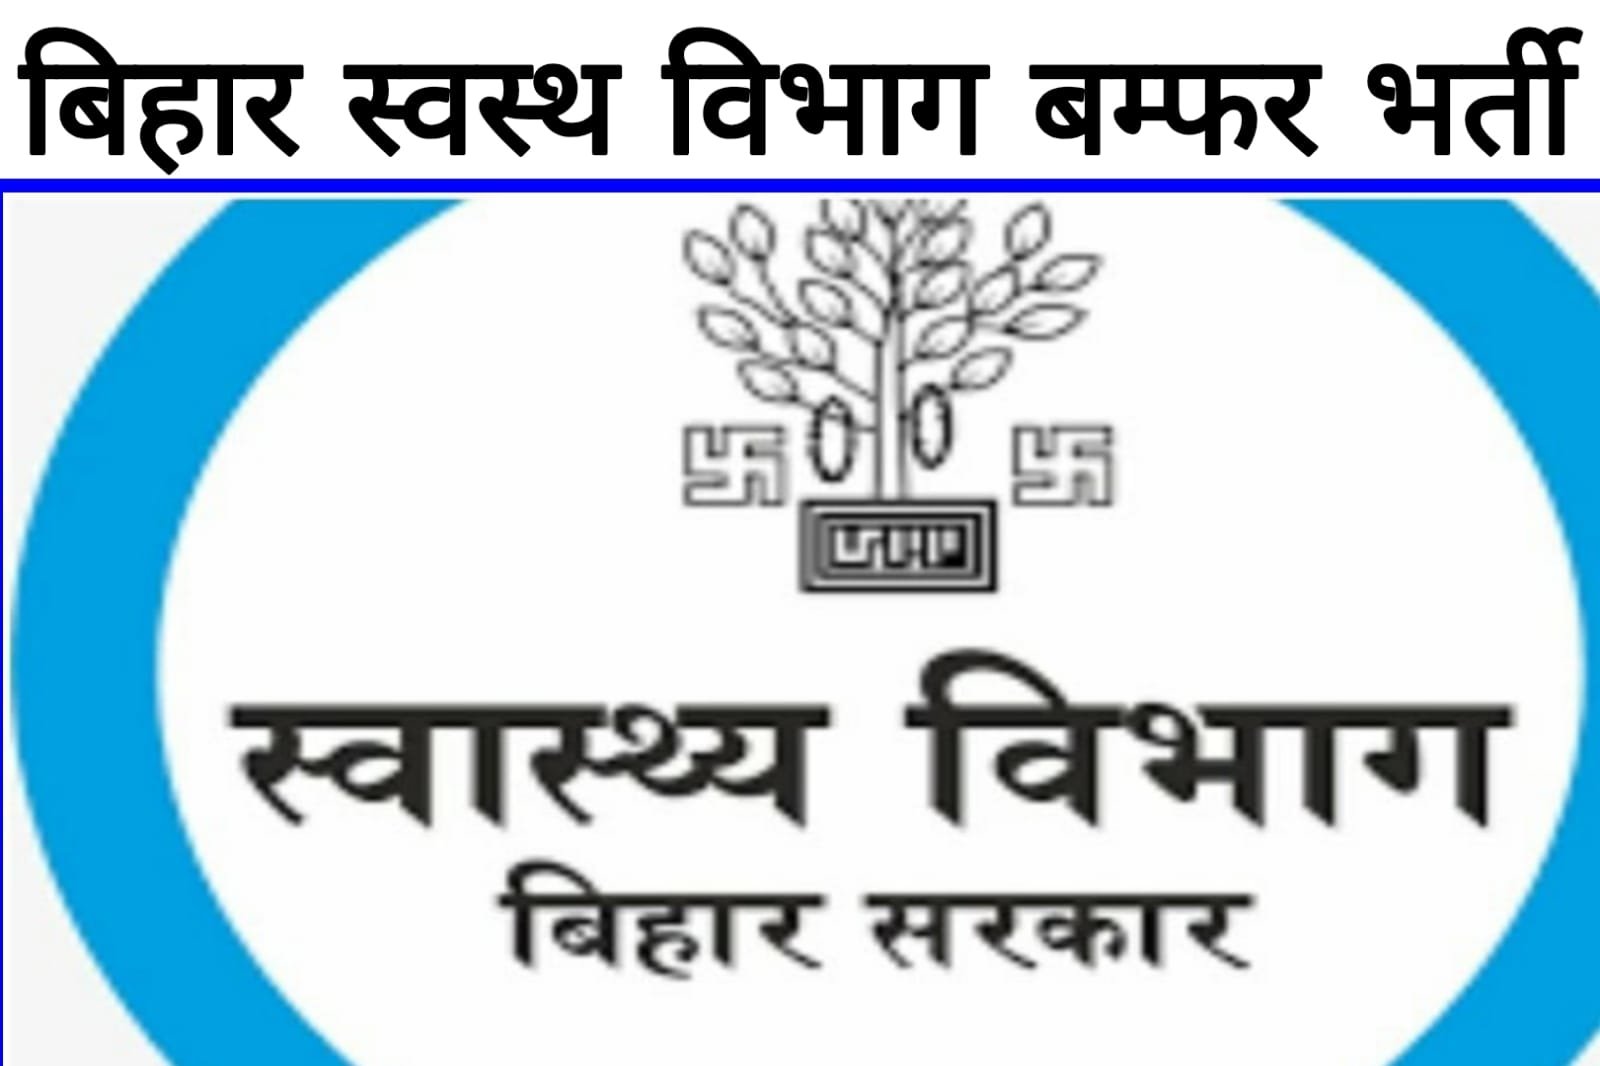 Bihar Sarkari Naukari In Helth Department